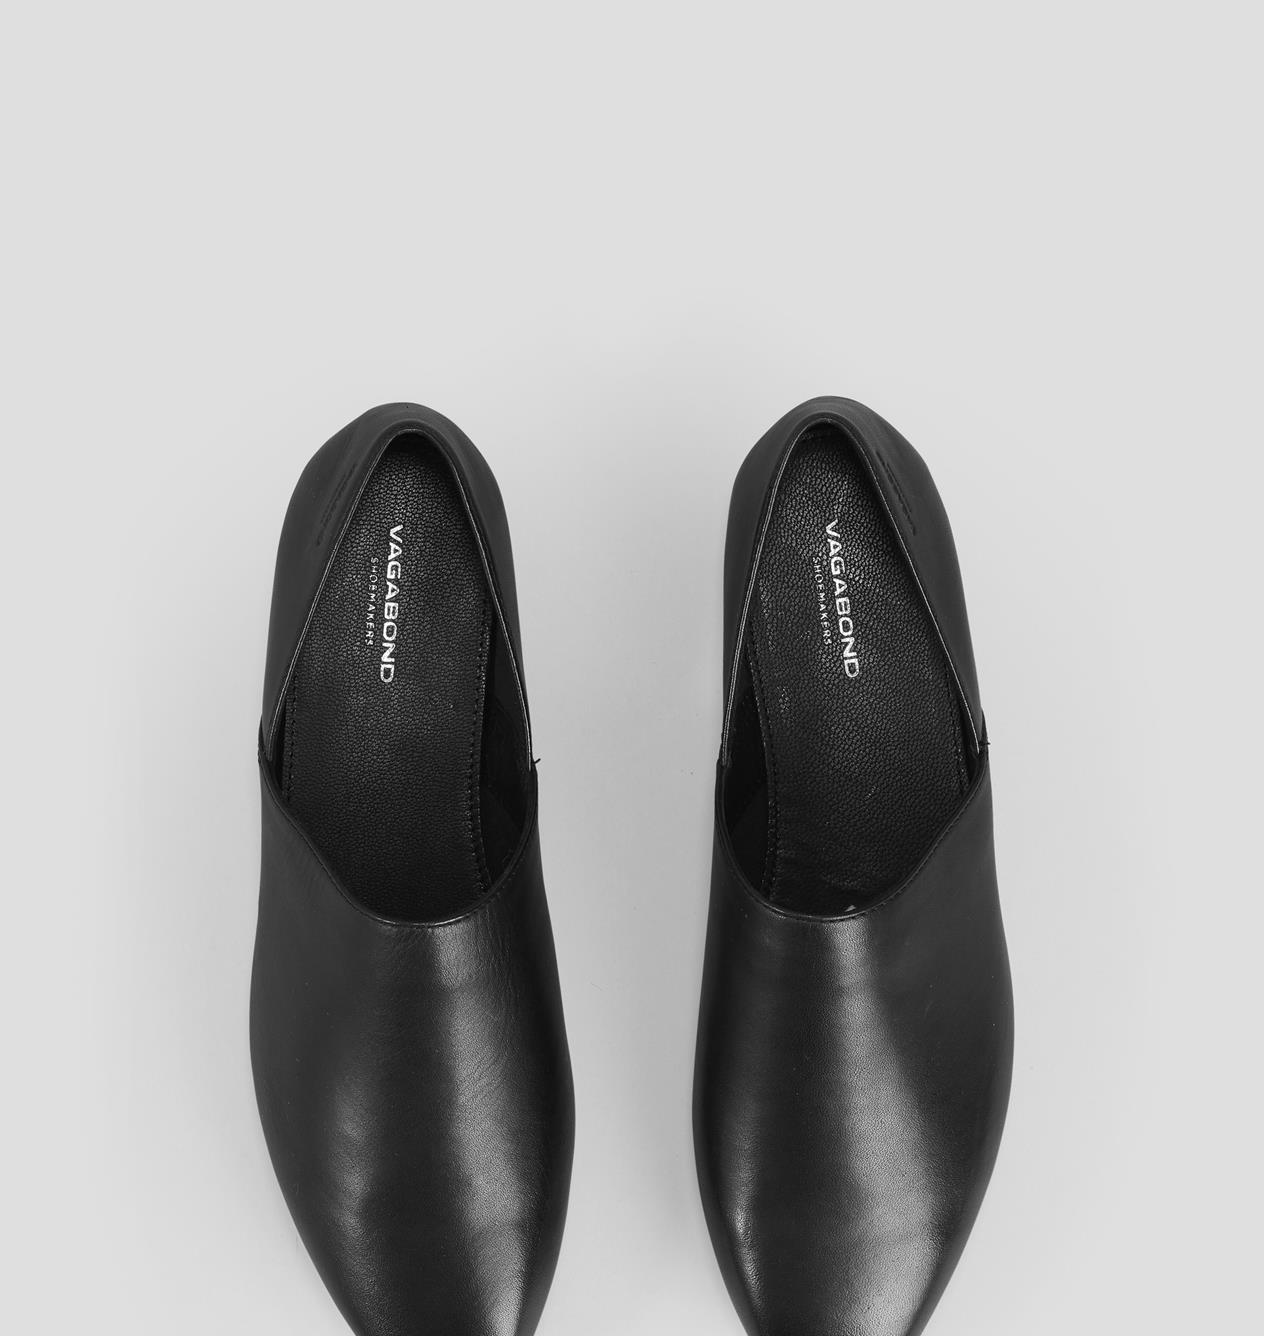 hyppigt vedhæng Smag Ayden - Black Shoes Woman | Vagabond